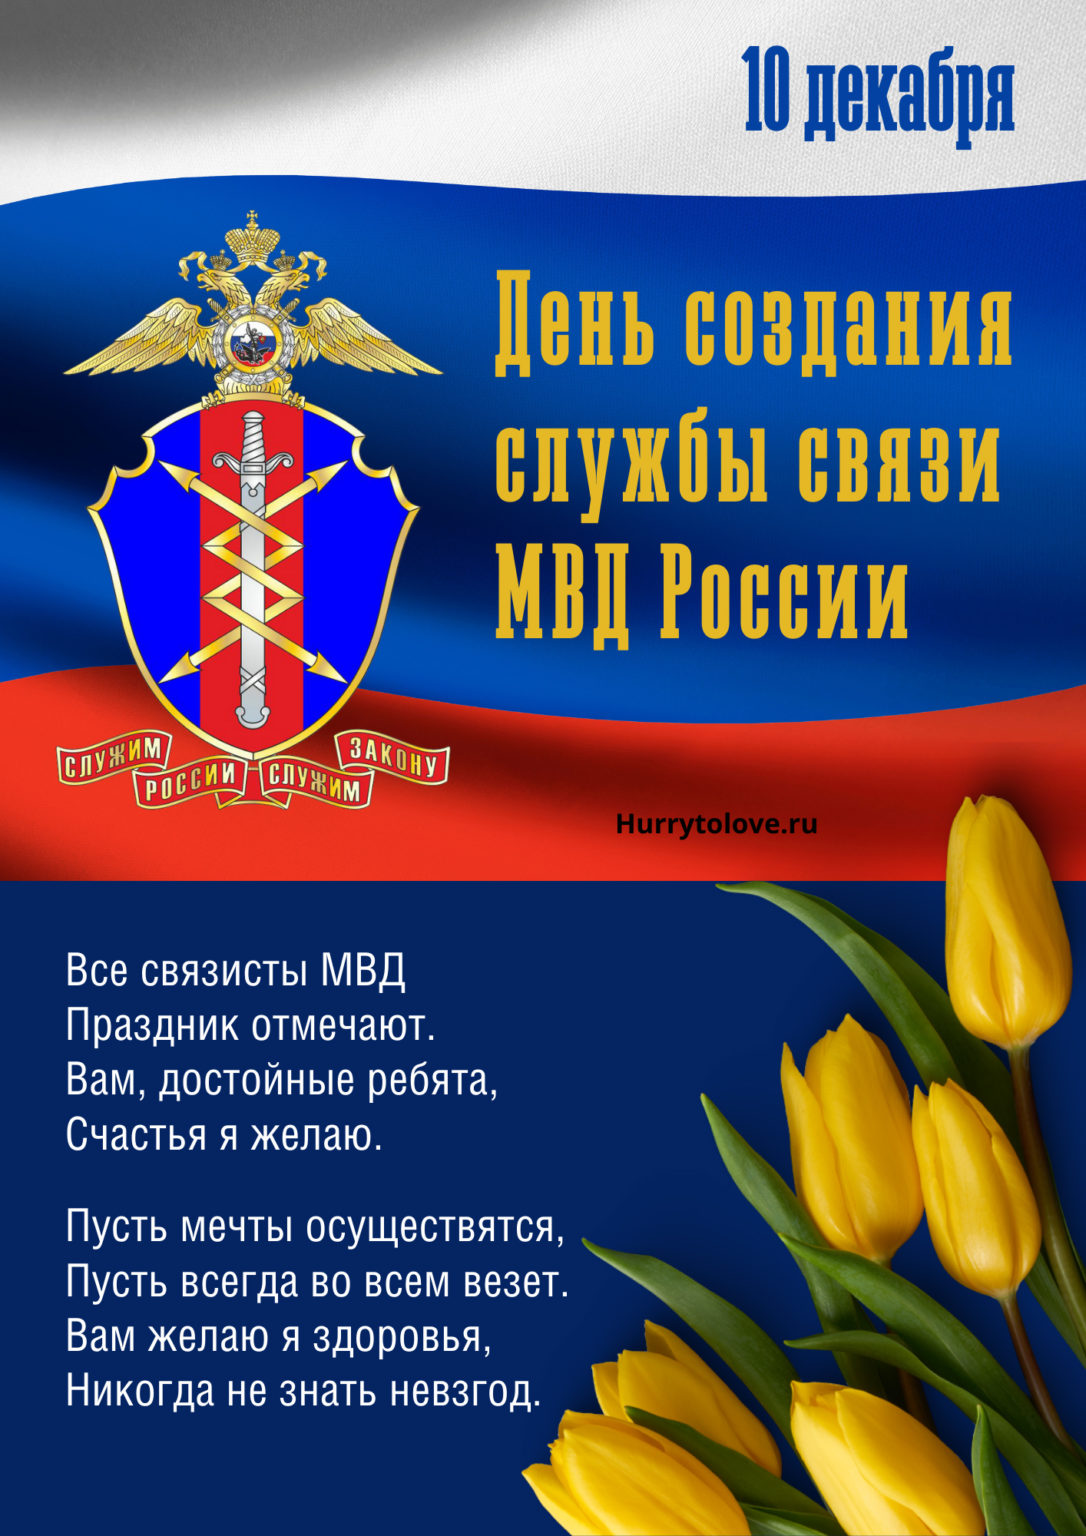 День создания службы связи МВД России 10 декабря